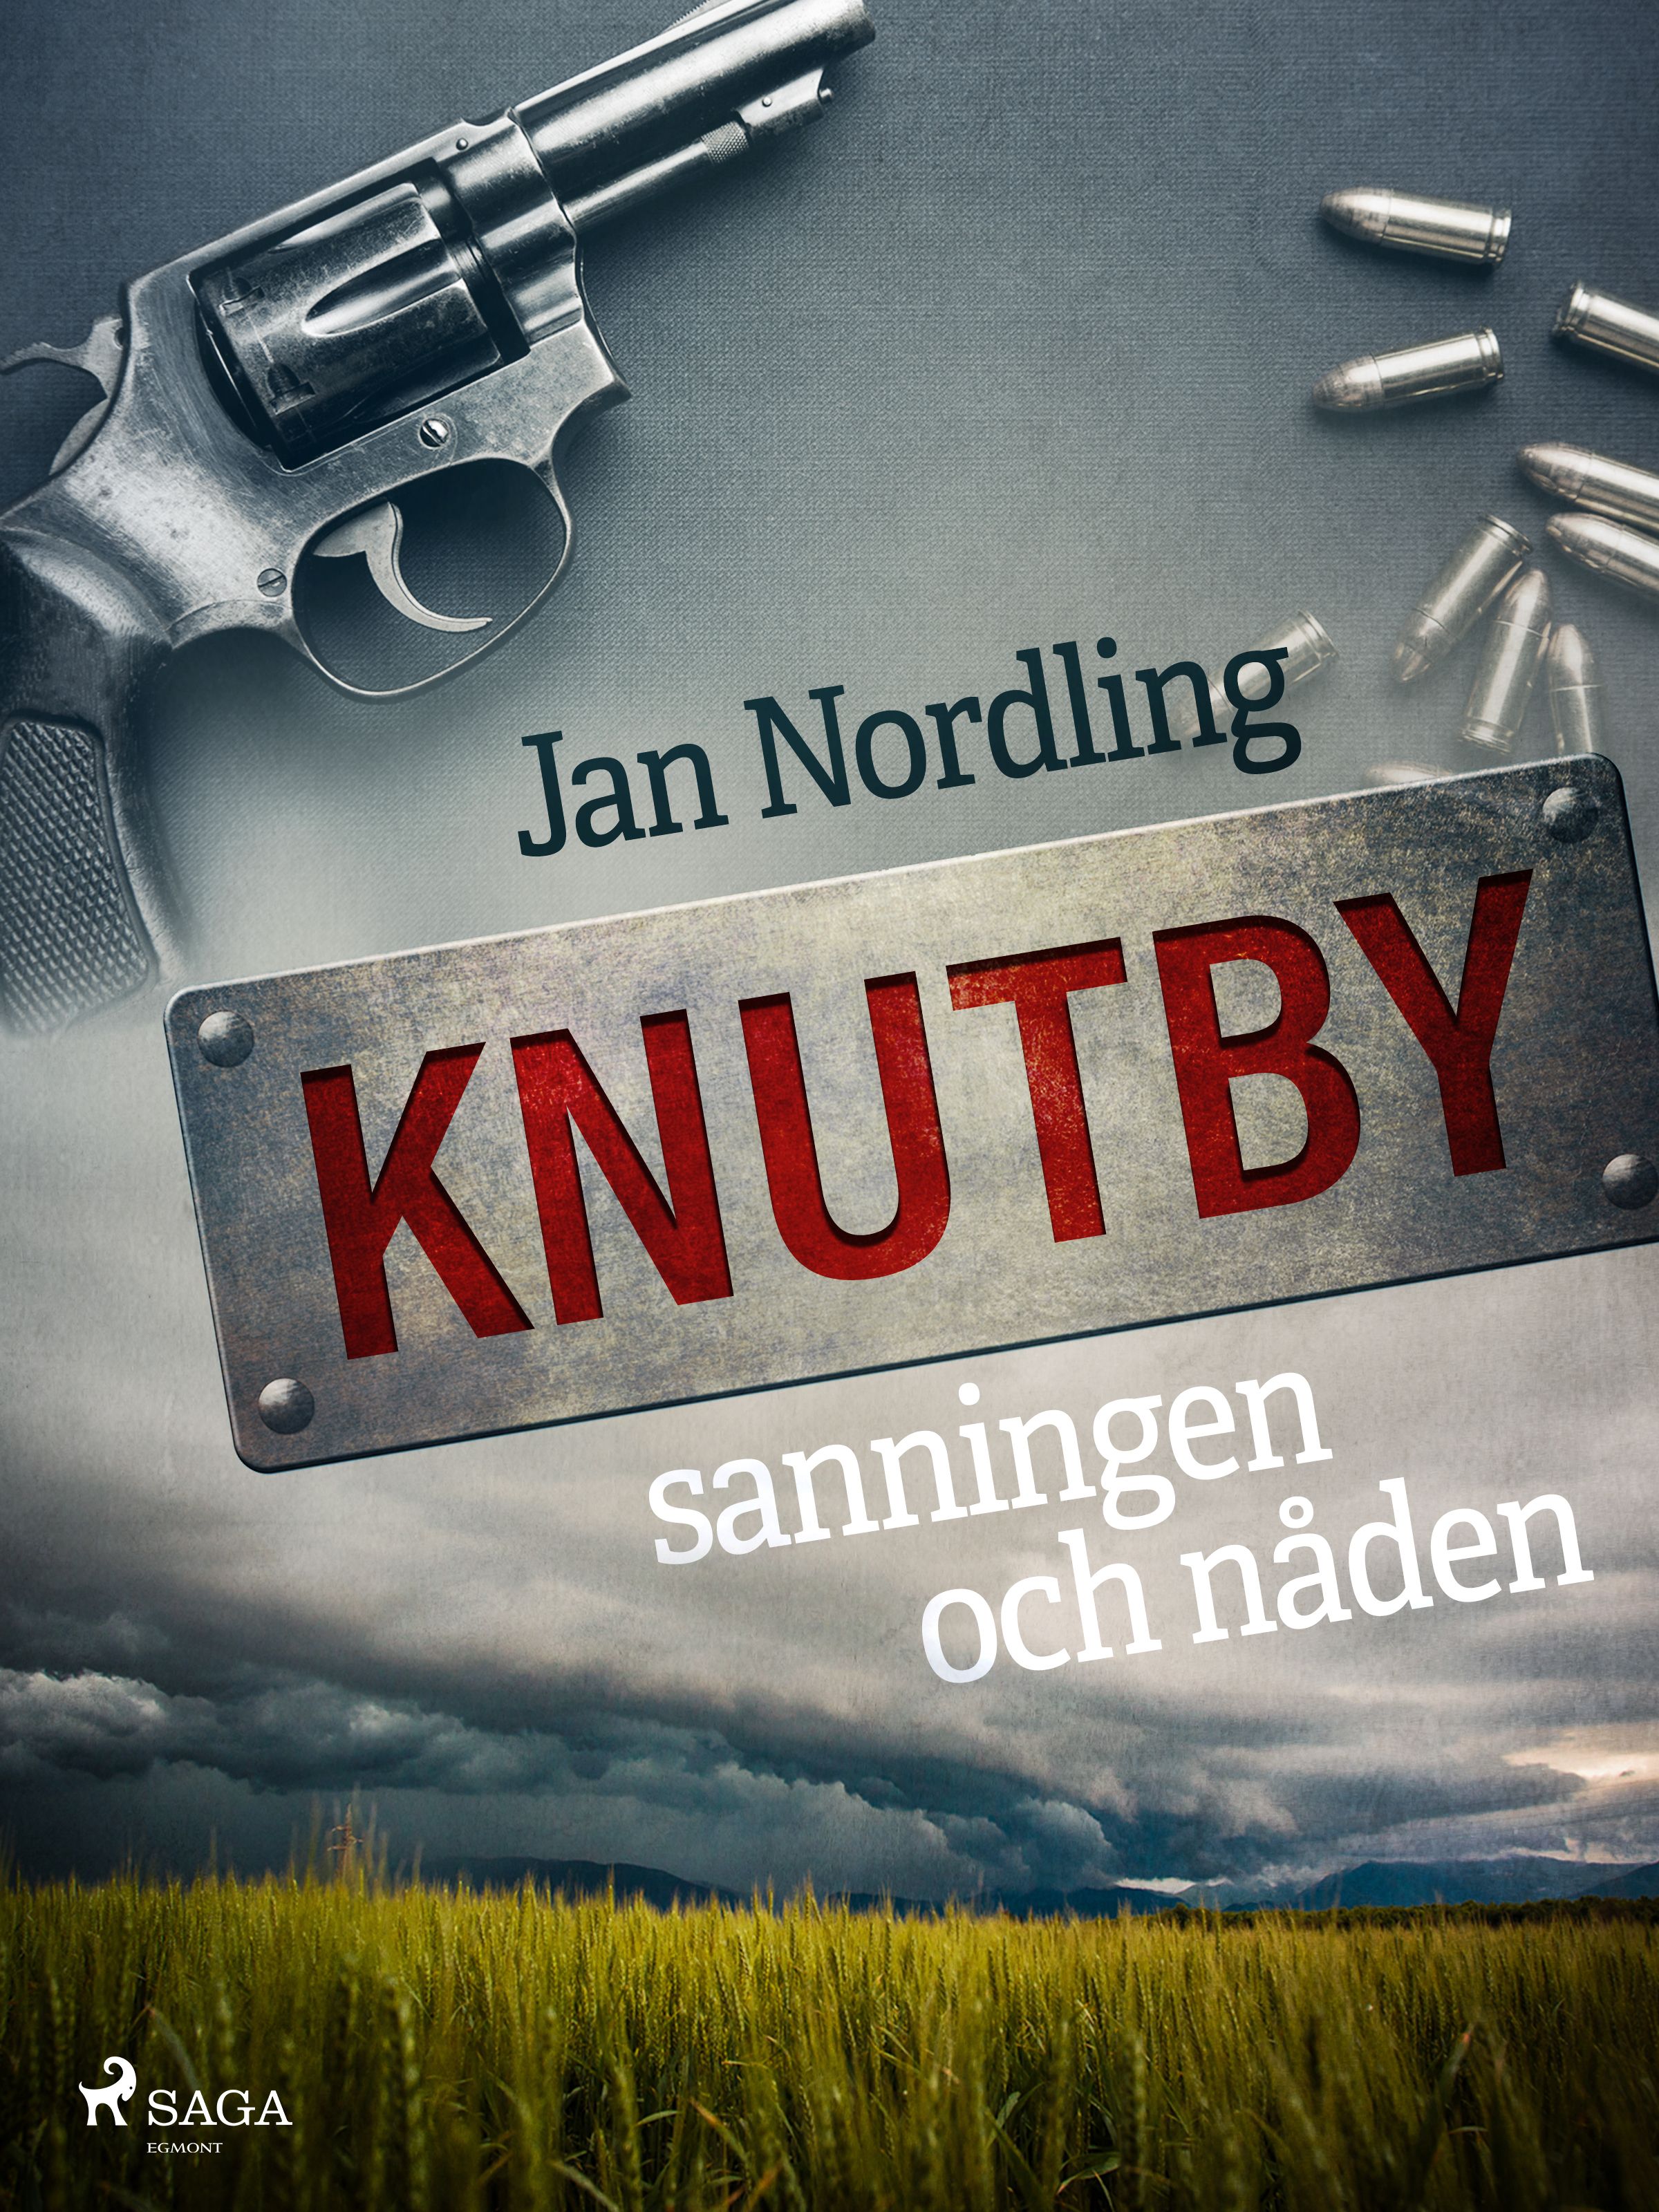 Knutby – sanningen och nåden, eBook by Jan Nordling